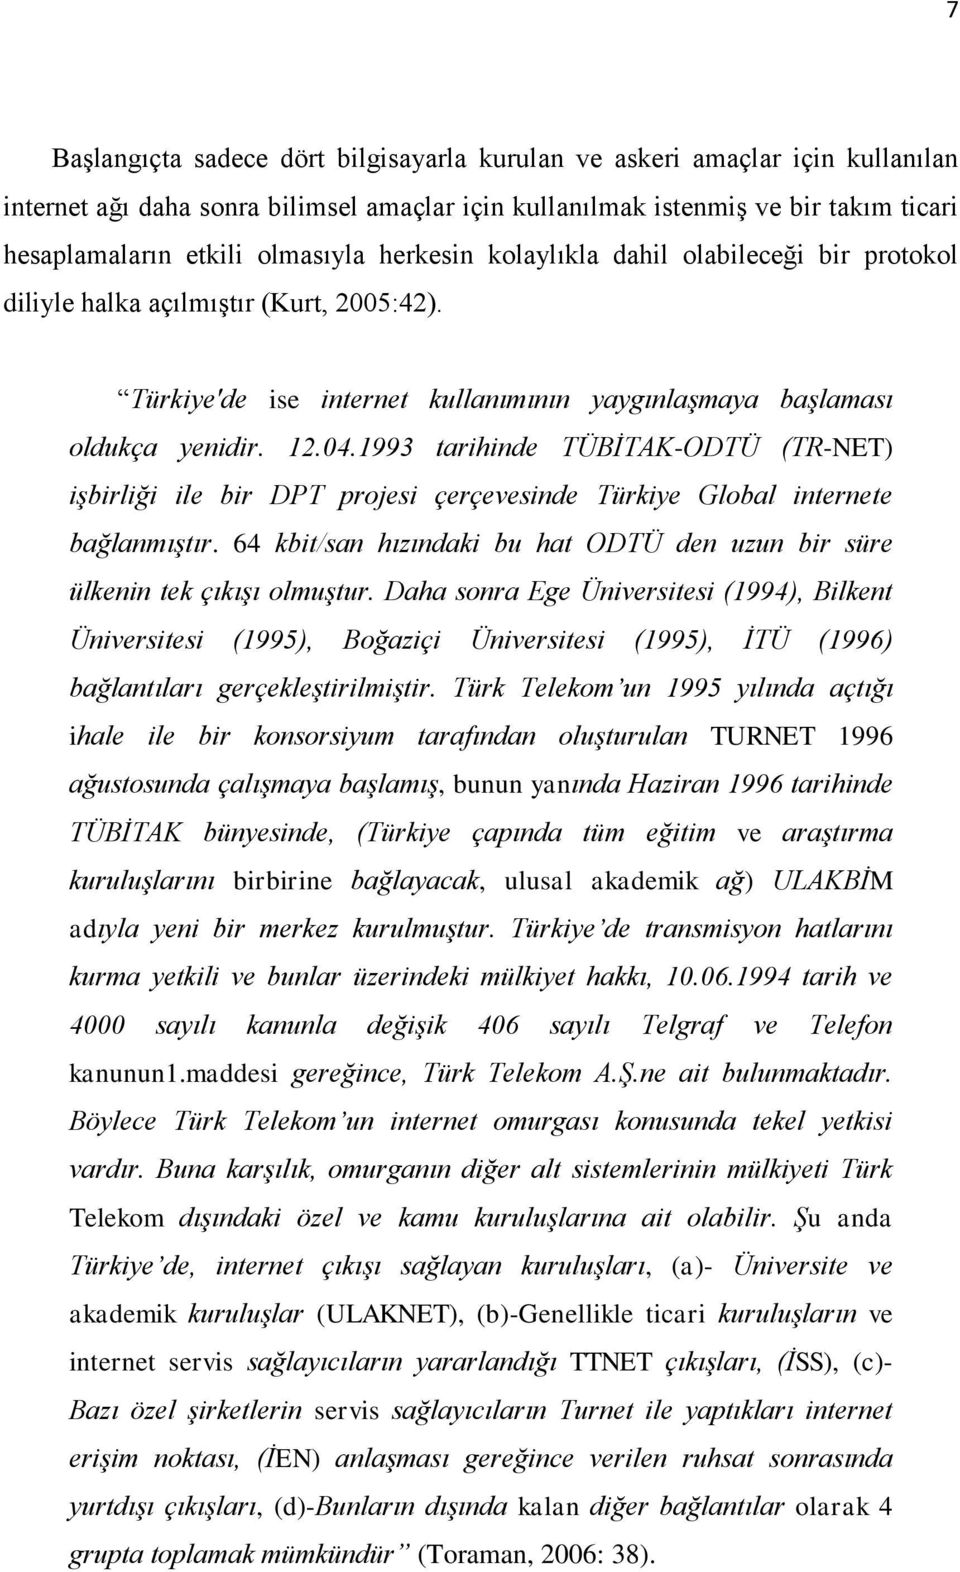 1993 tarihinde TÜBİTAK-ODTÜ (TR-NET) işbirliği ile bir DPT projesi çerçevesinde Türkiye Global internete bağlanmıştır. 64 kbit/san hızındaki bu hat ODTÜ den uzun bir süre ülkenin tek çıkışı olmuştur.